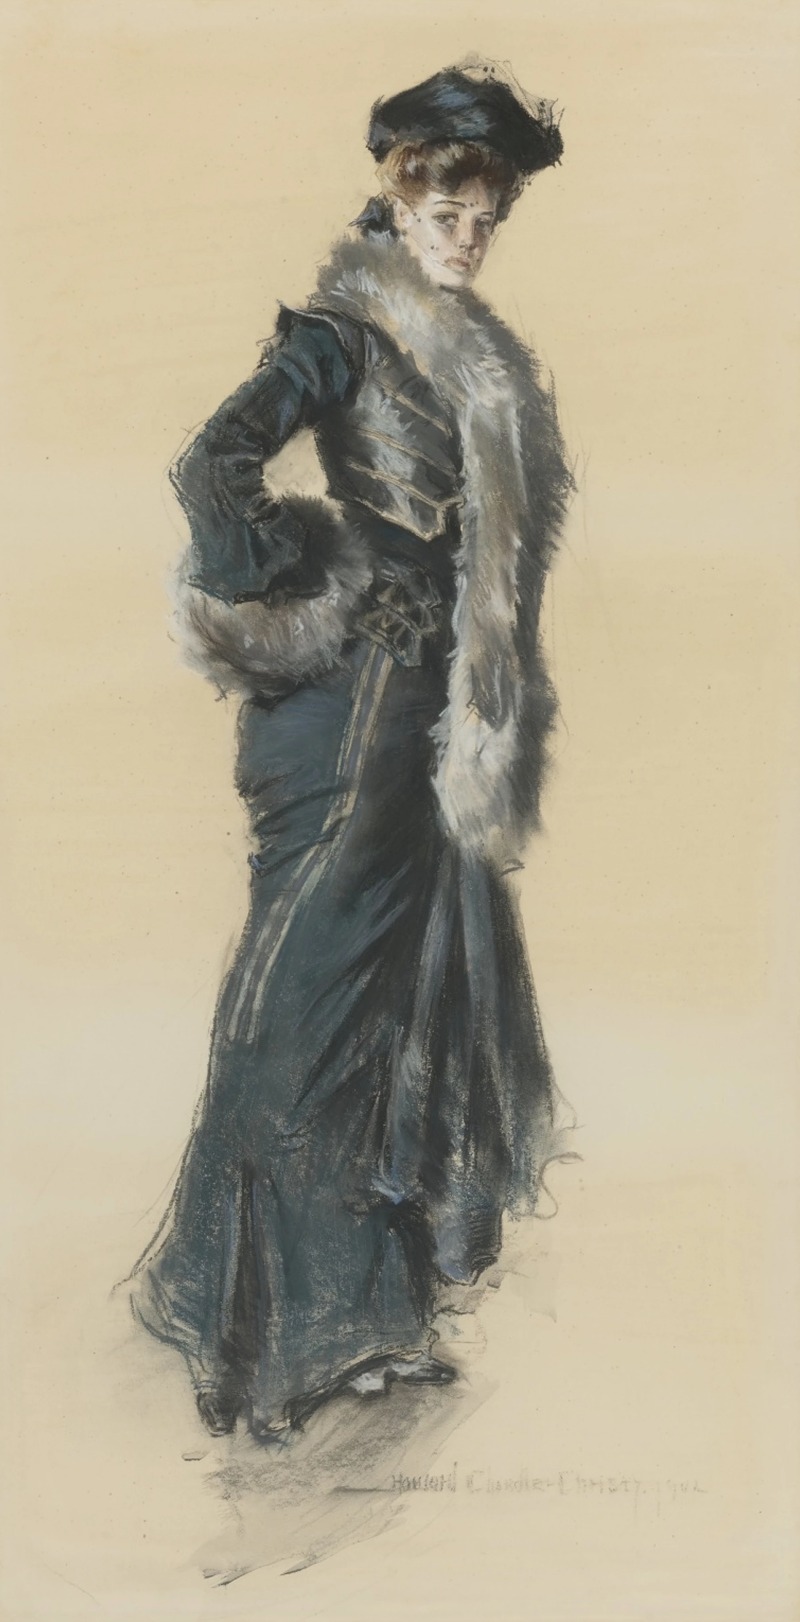 Howard Chandler Christy - An Elegant Lady in a Fur-Trimmed Coat